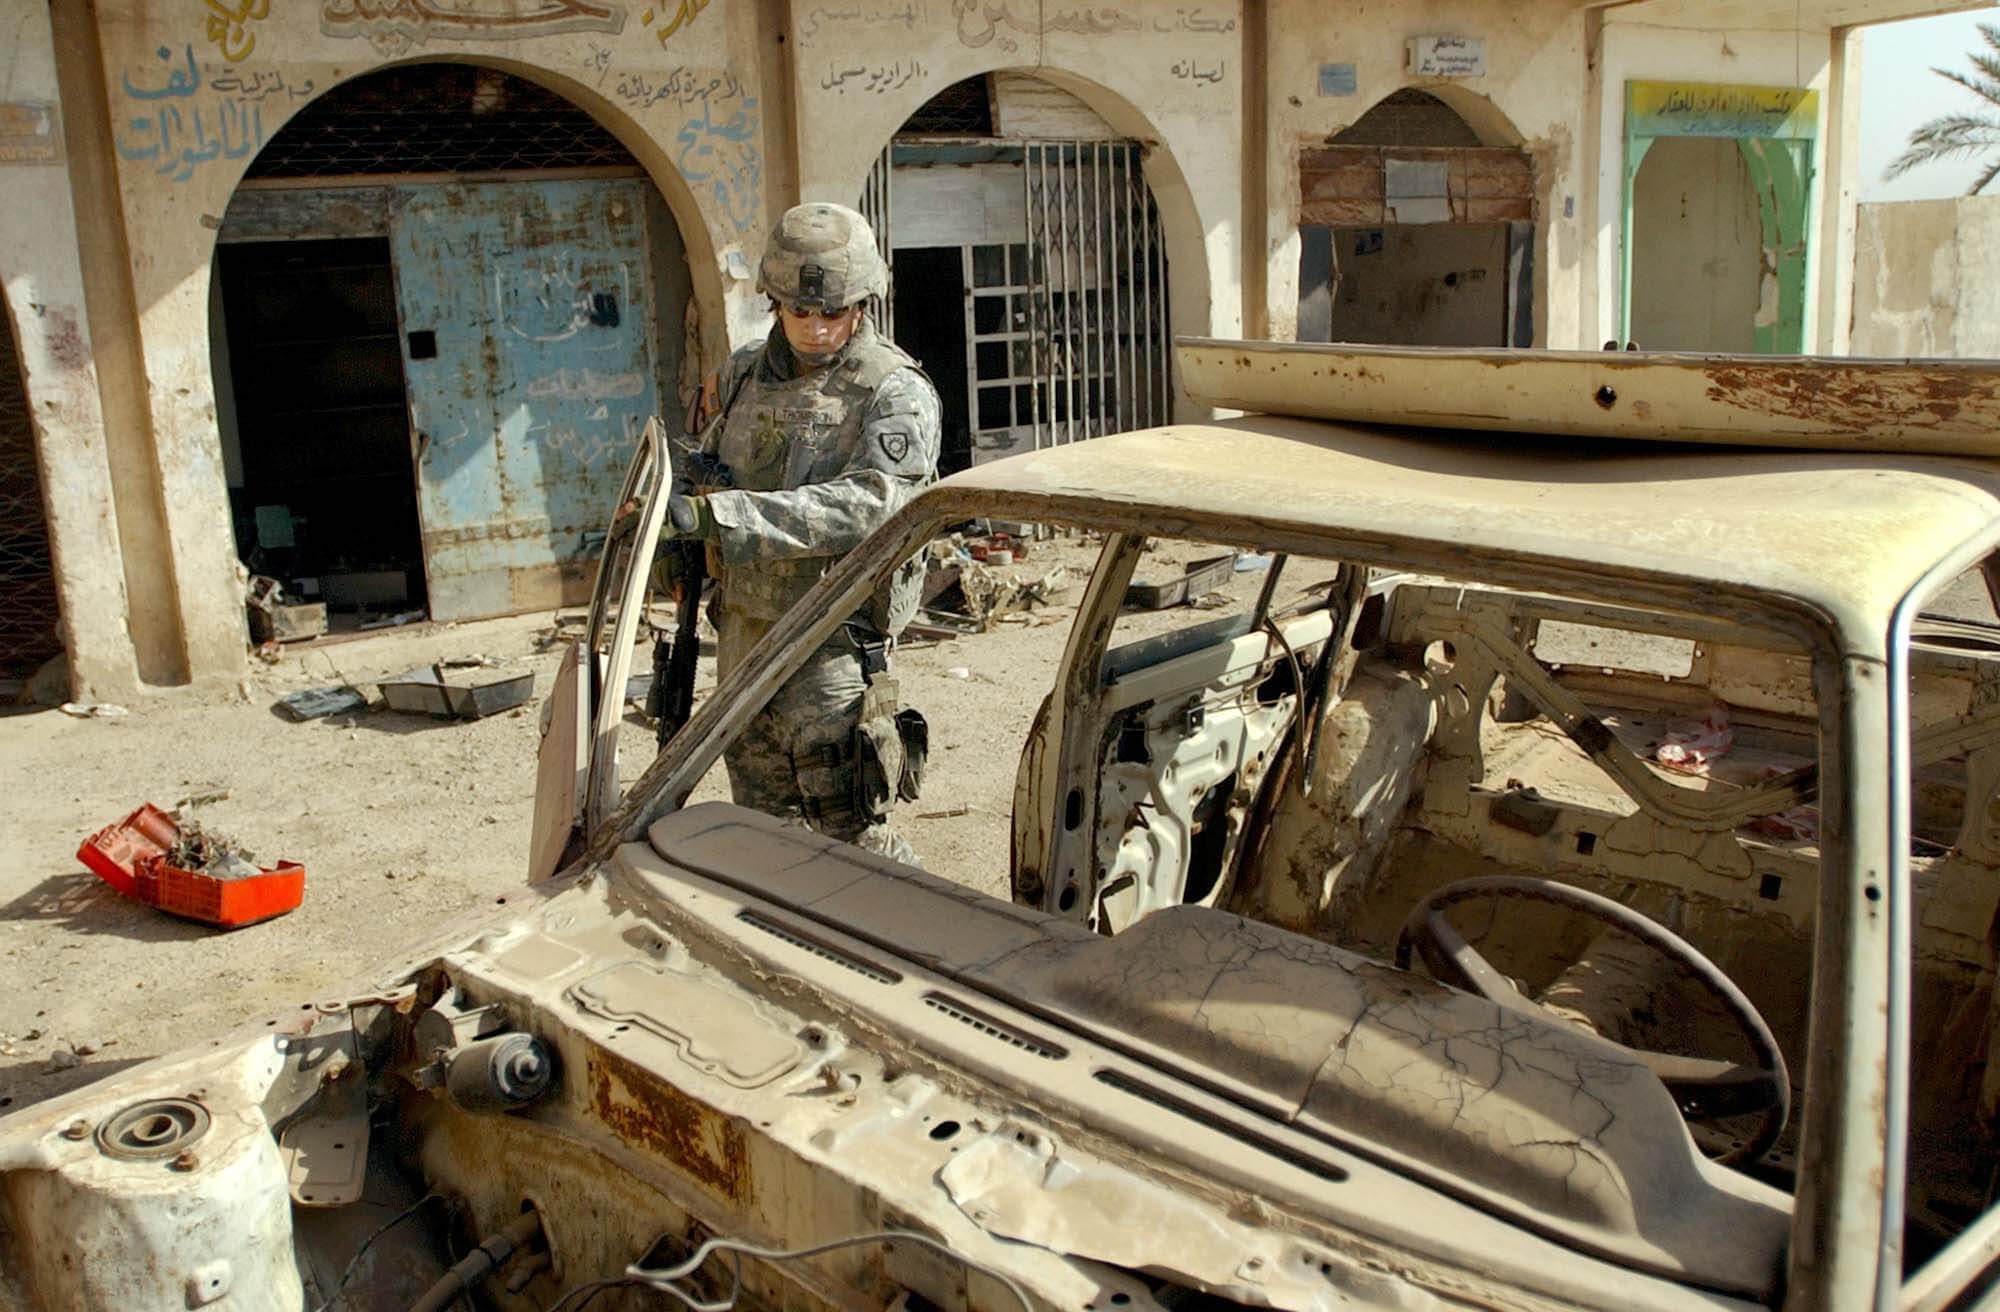 Een Amerikaanse militair bij een verwoeste auto in de Iraakse hoofdstad Baghdad, 2007. Bron: U.S. Army